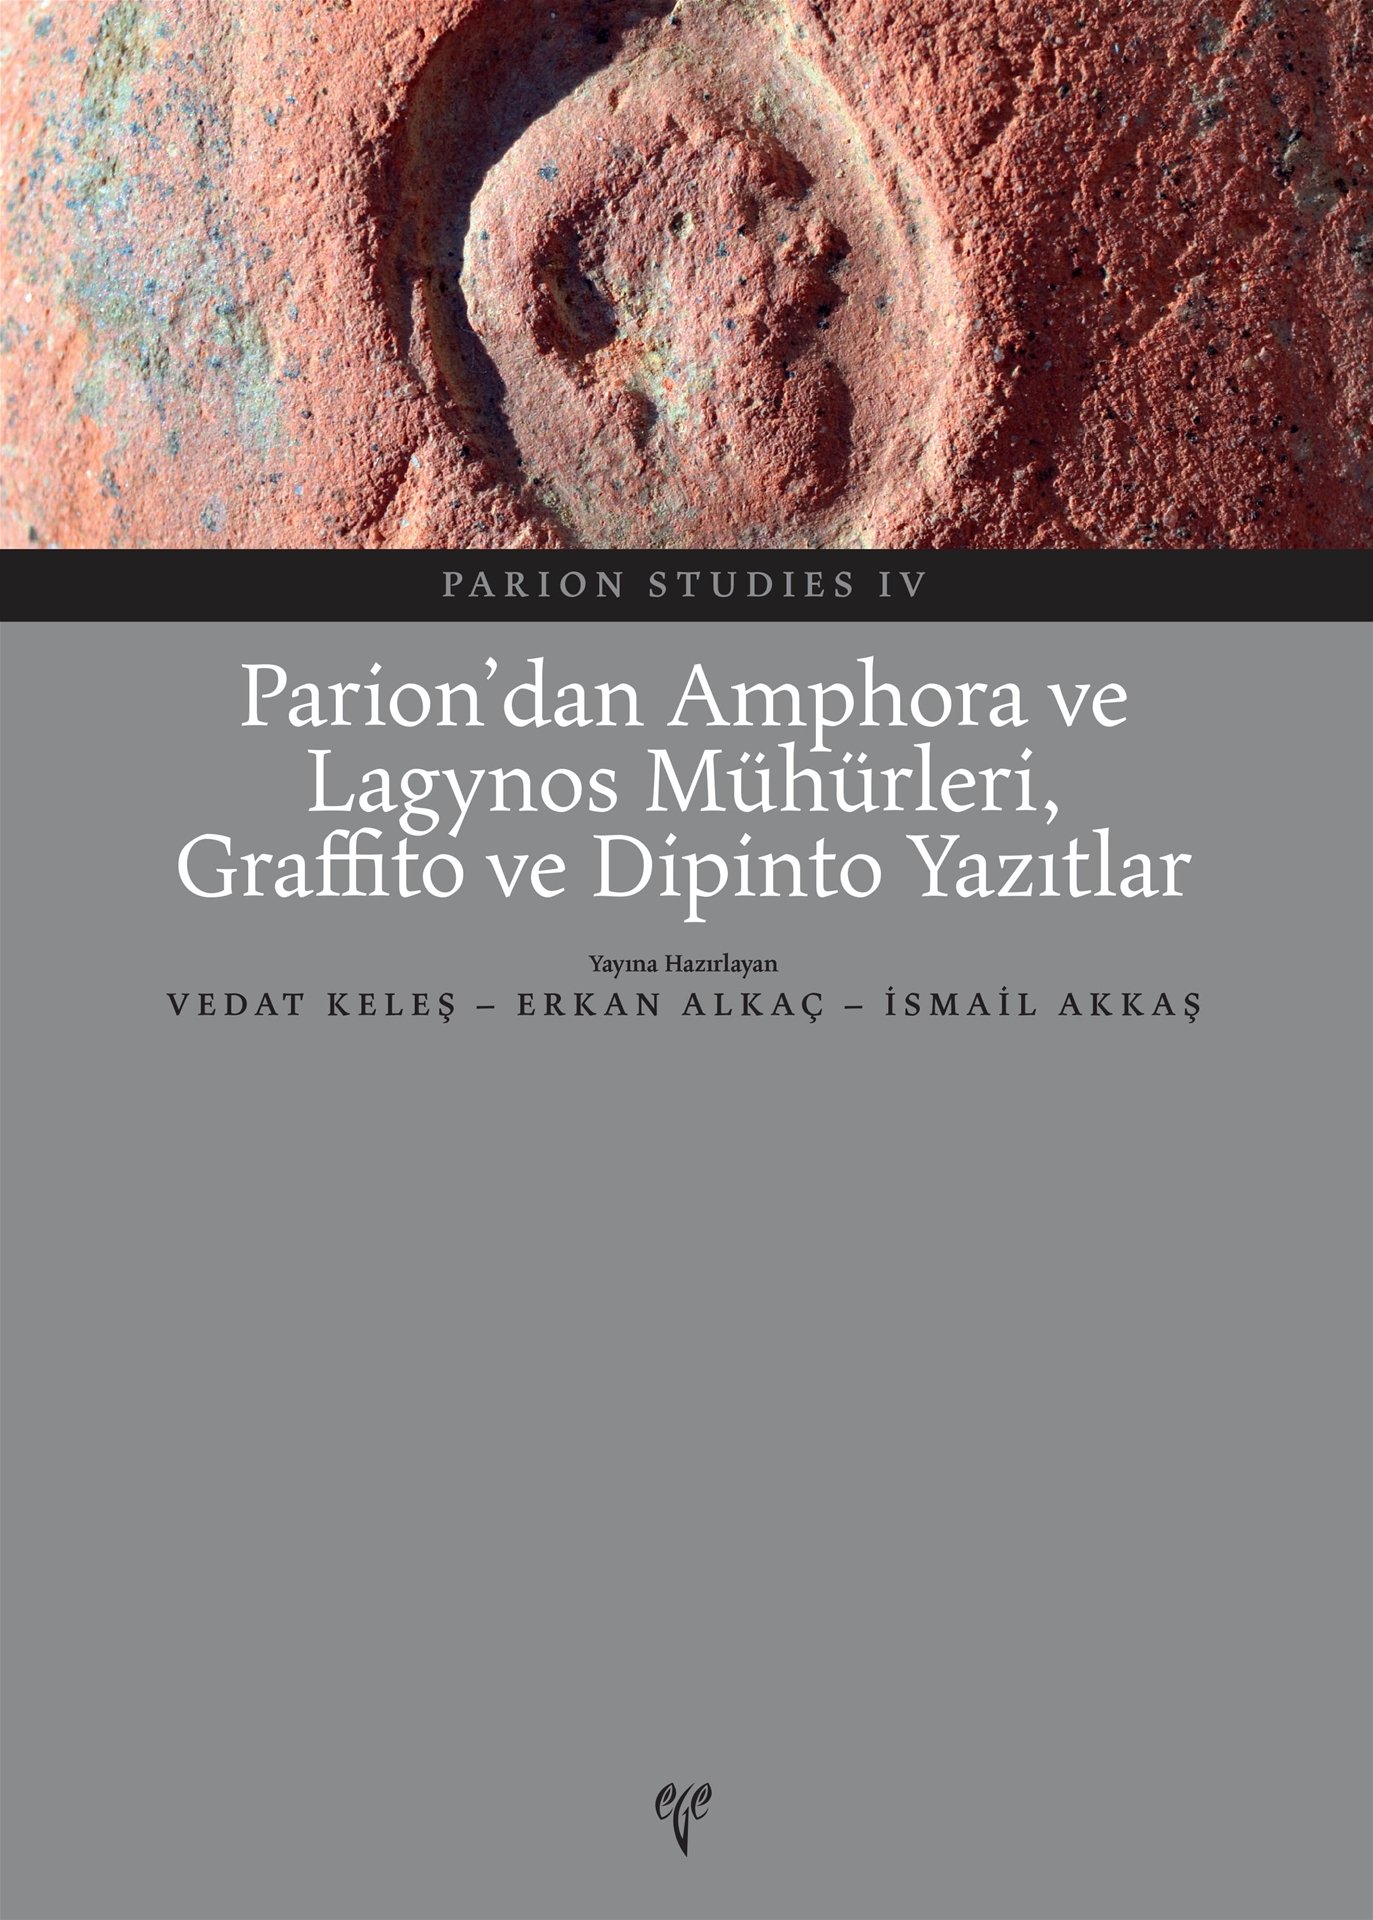 Keleş, Vedat – Erkan Alkaç – İsmail Akkaş : Parion'dan Amphora ve Lagynos Mühürleri, Graffito ve Dipinto Yazıtlar